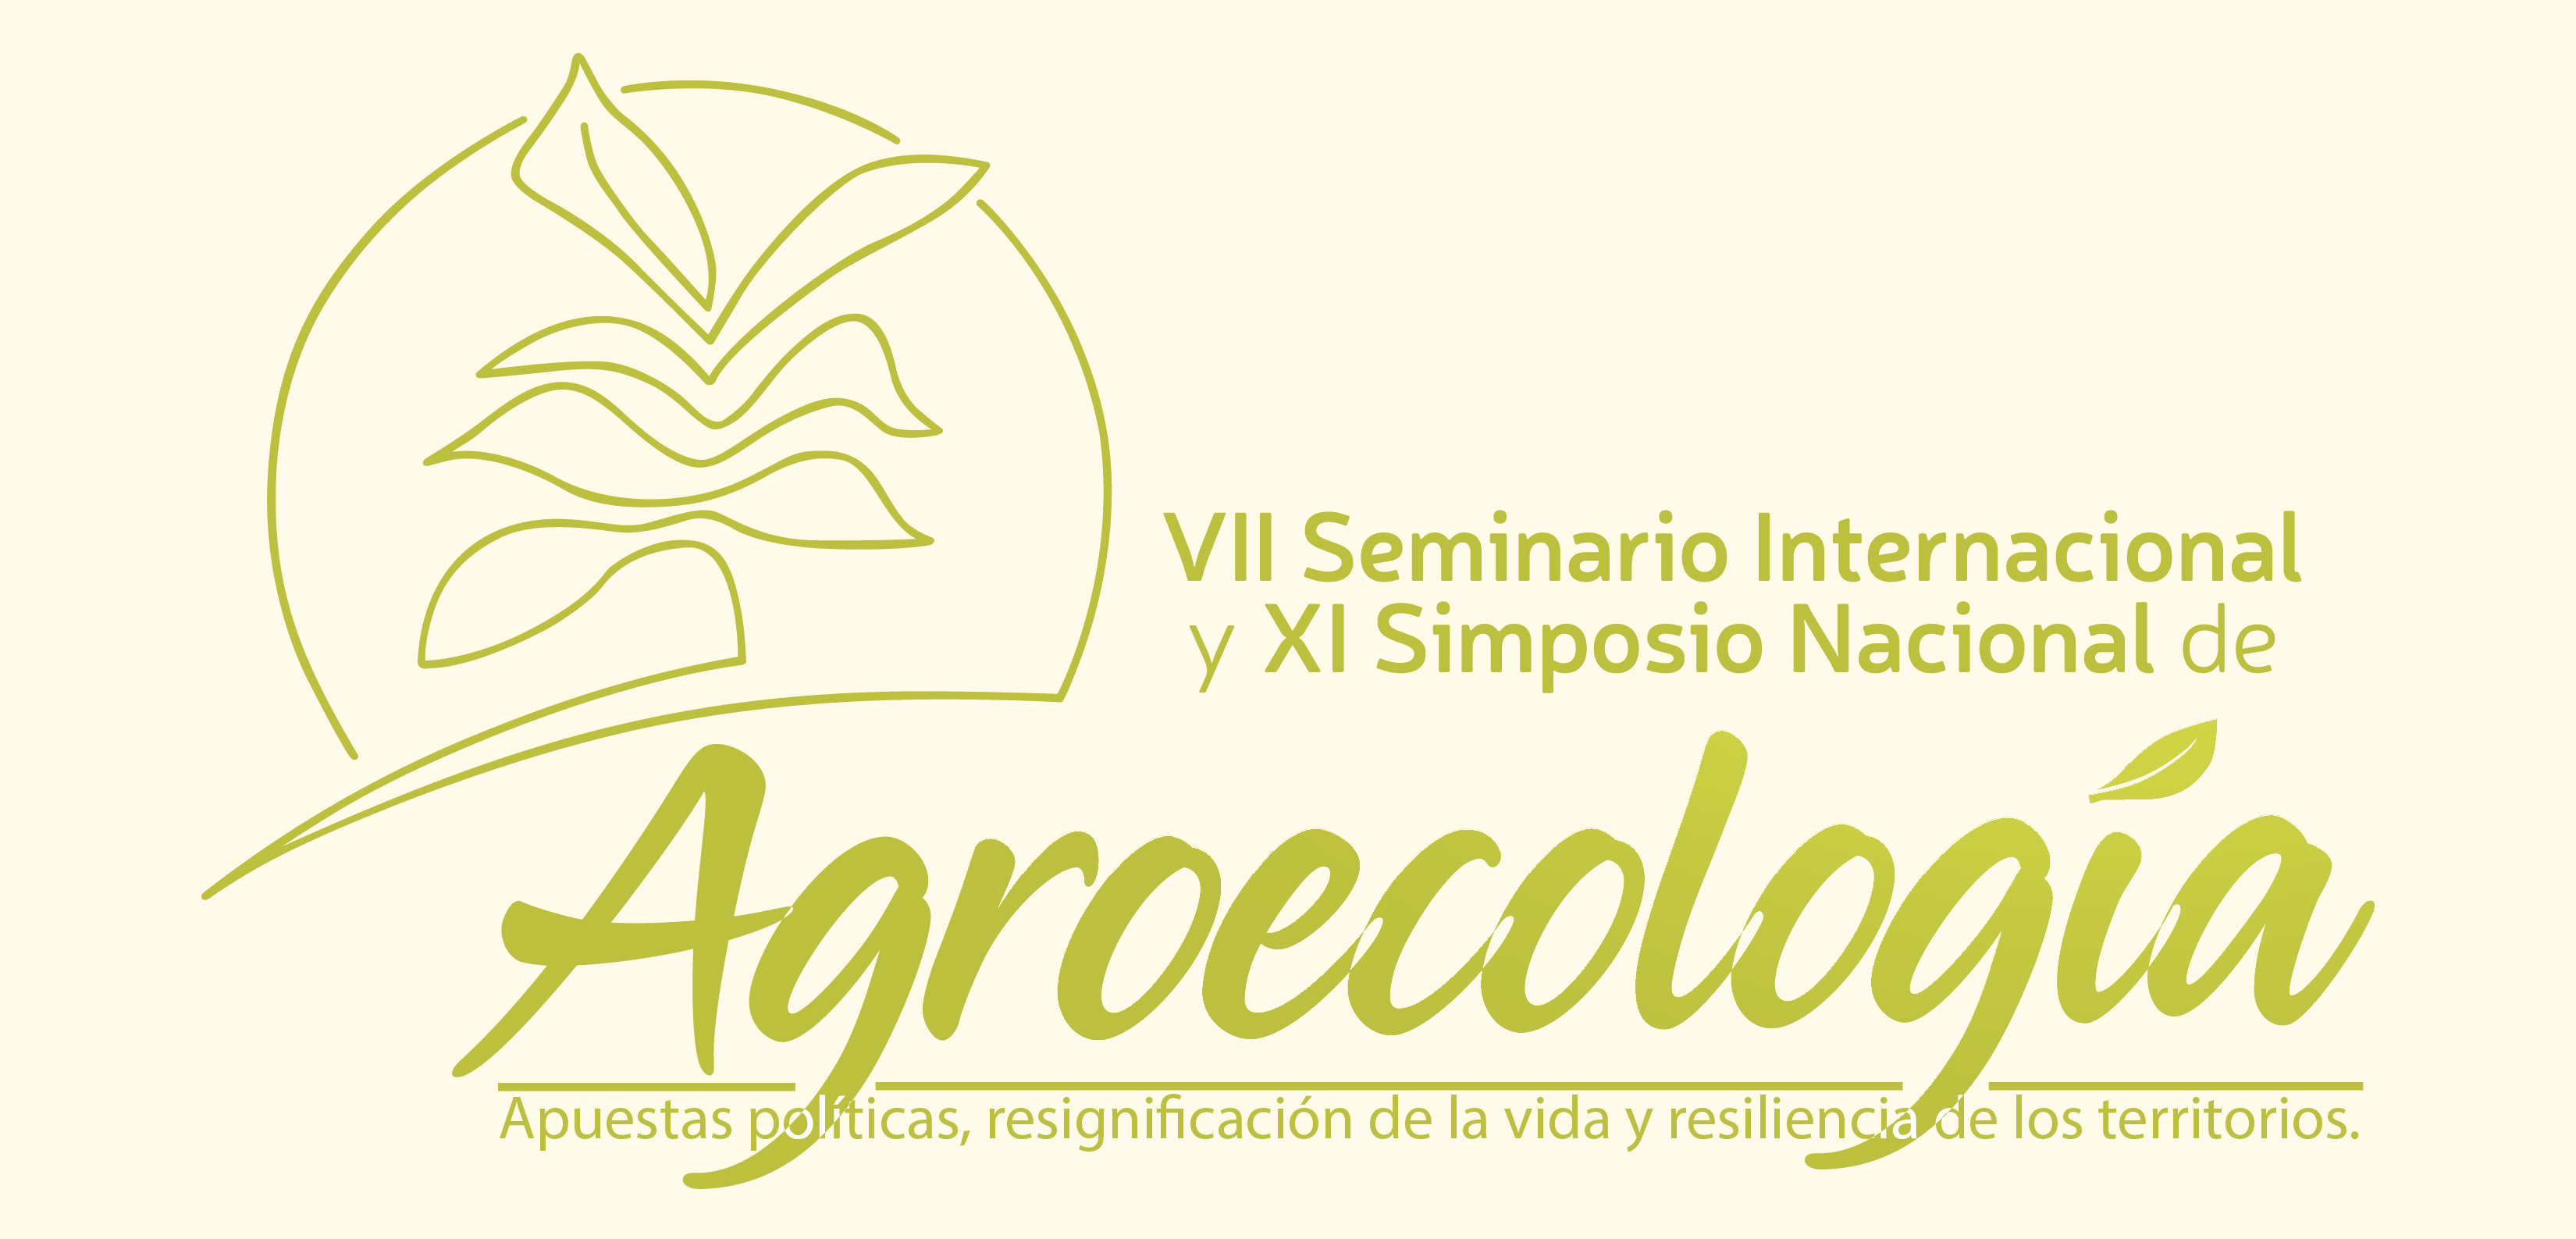 IMAGEN SEMINARIO Y SIMPOSIO AGROECOLOGIA ok 01